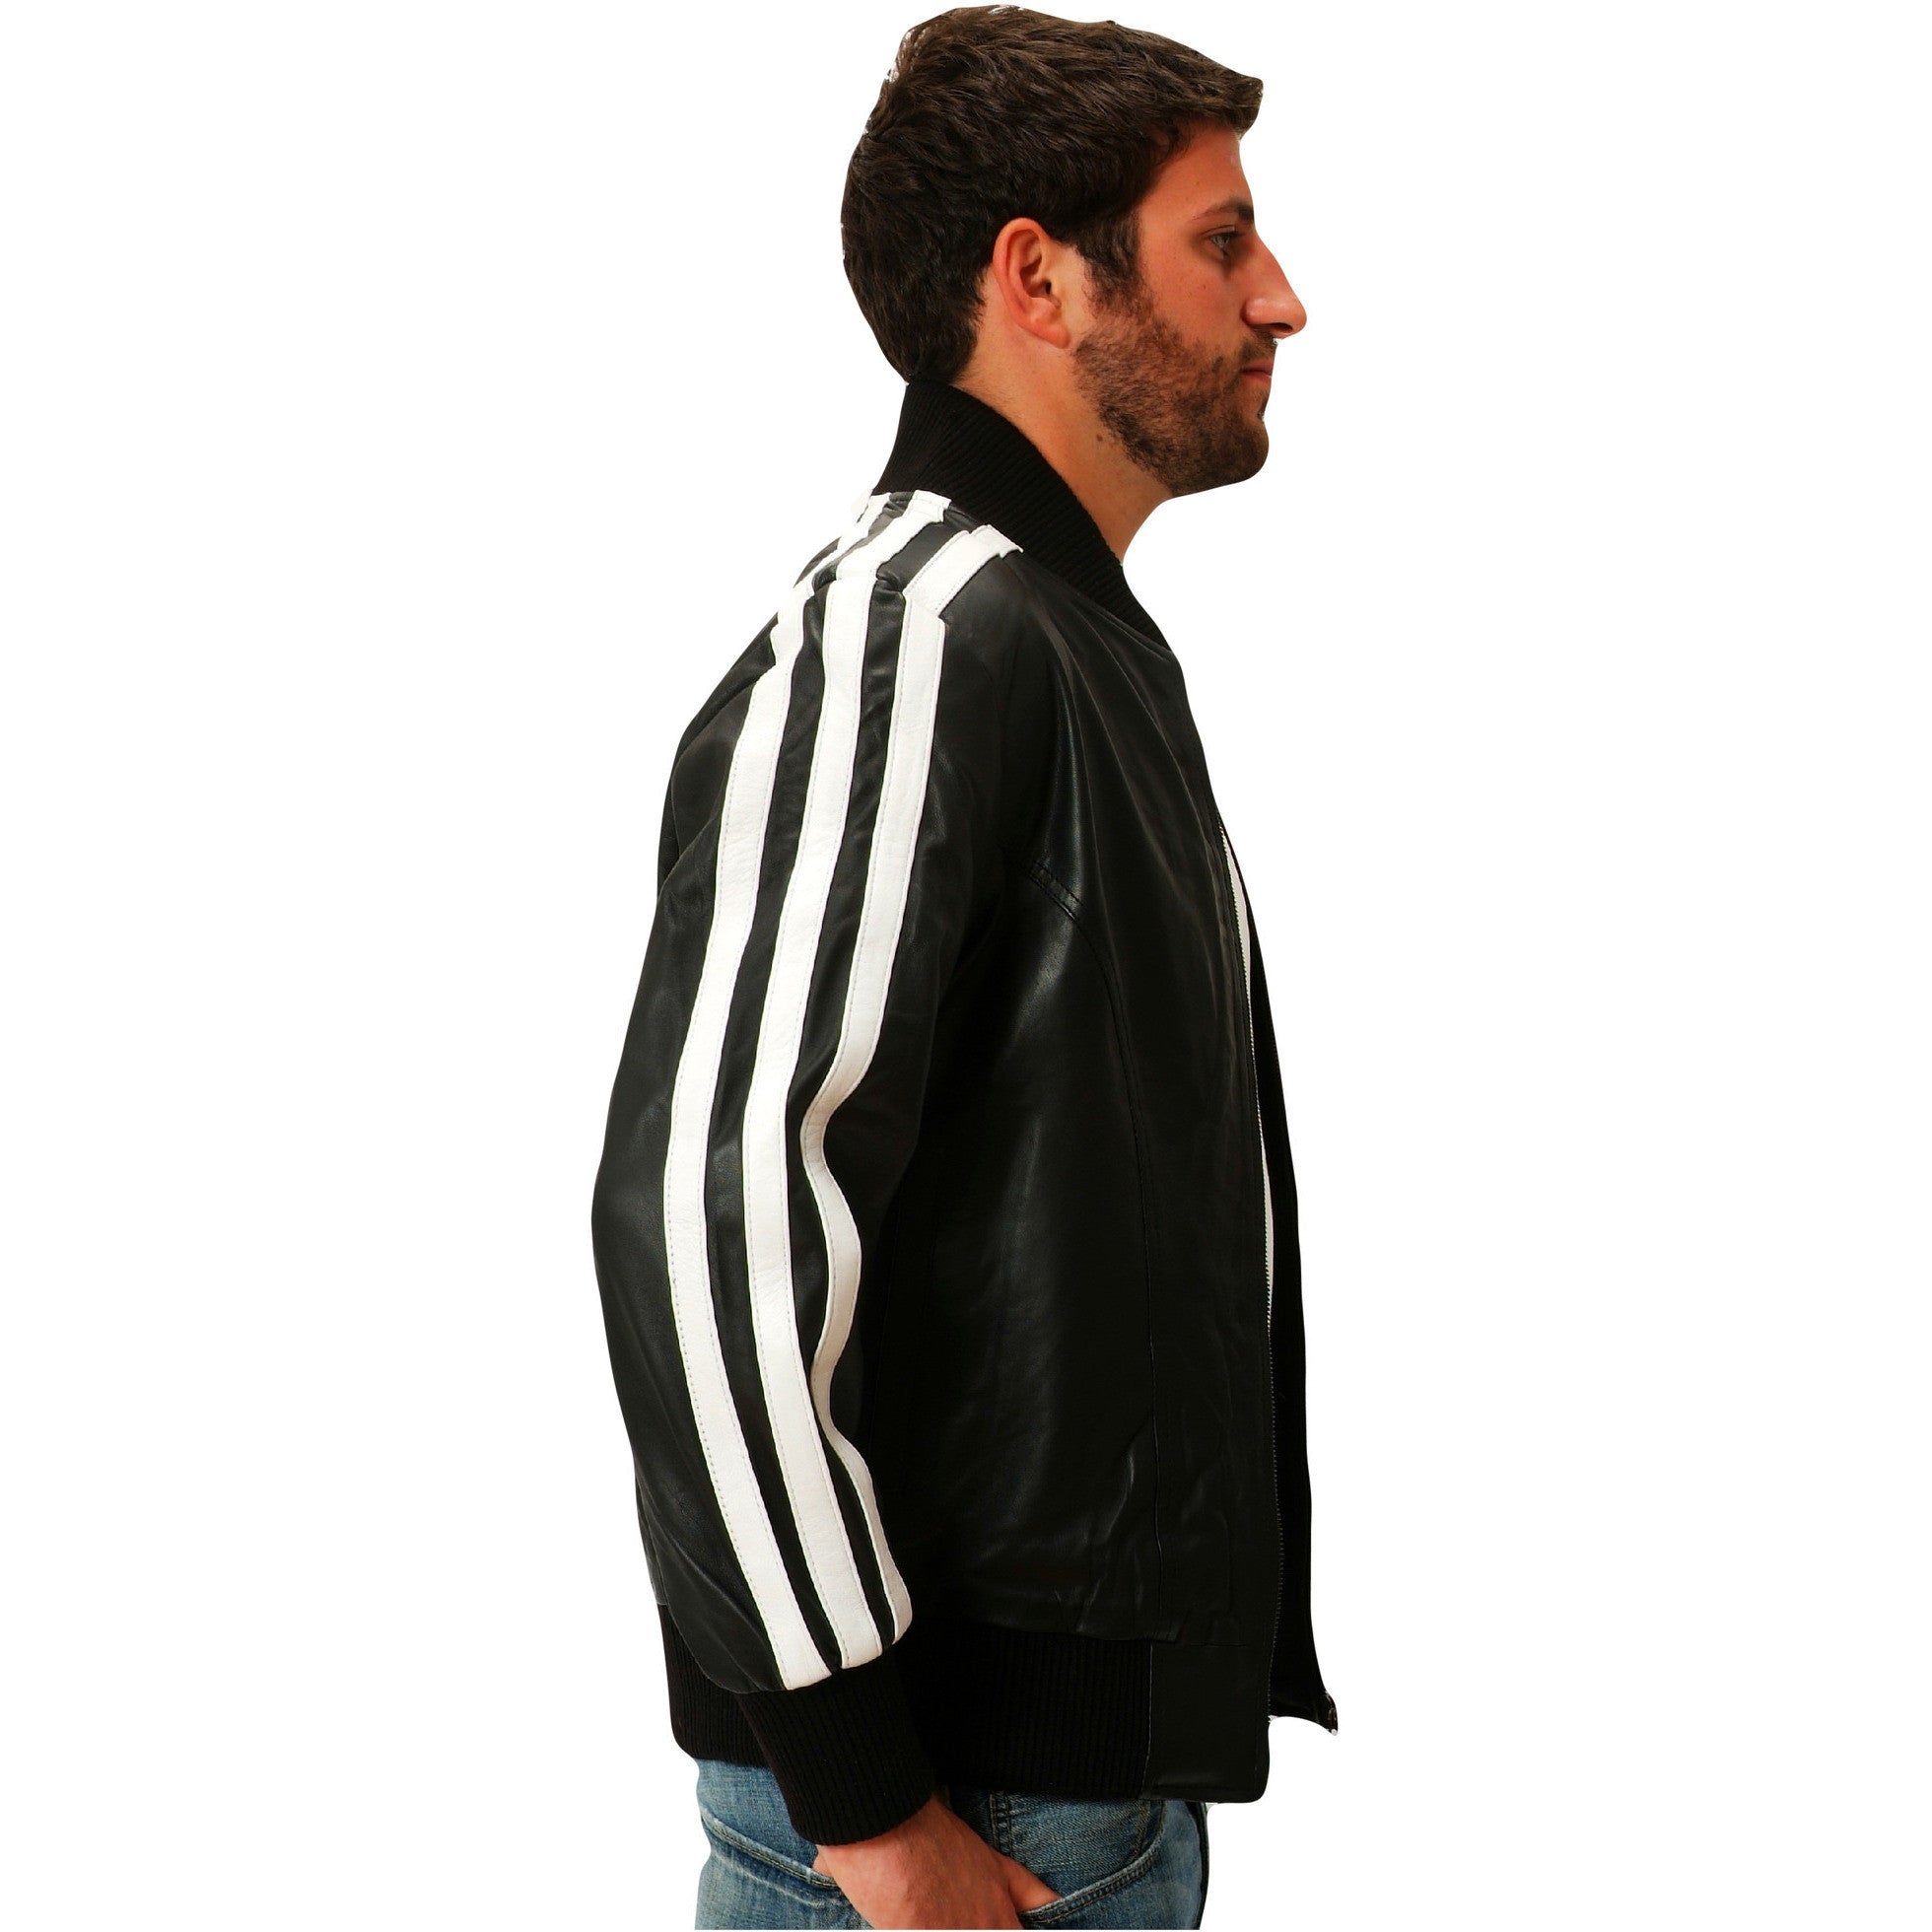 Mens black leather track jacket side